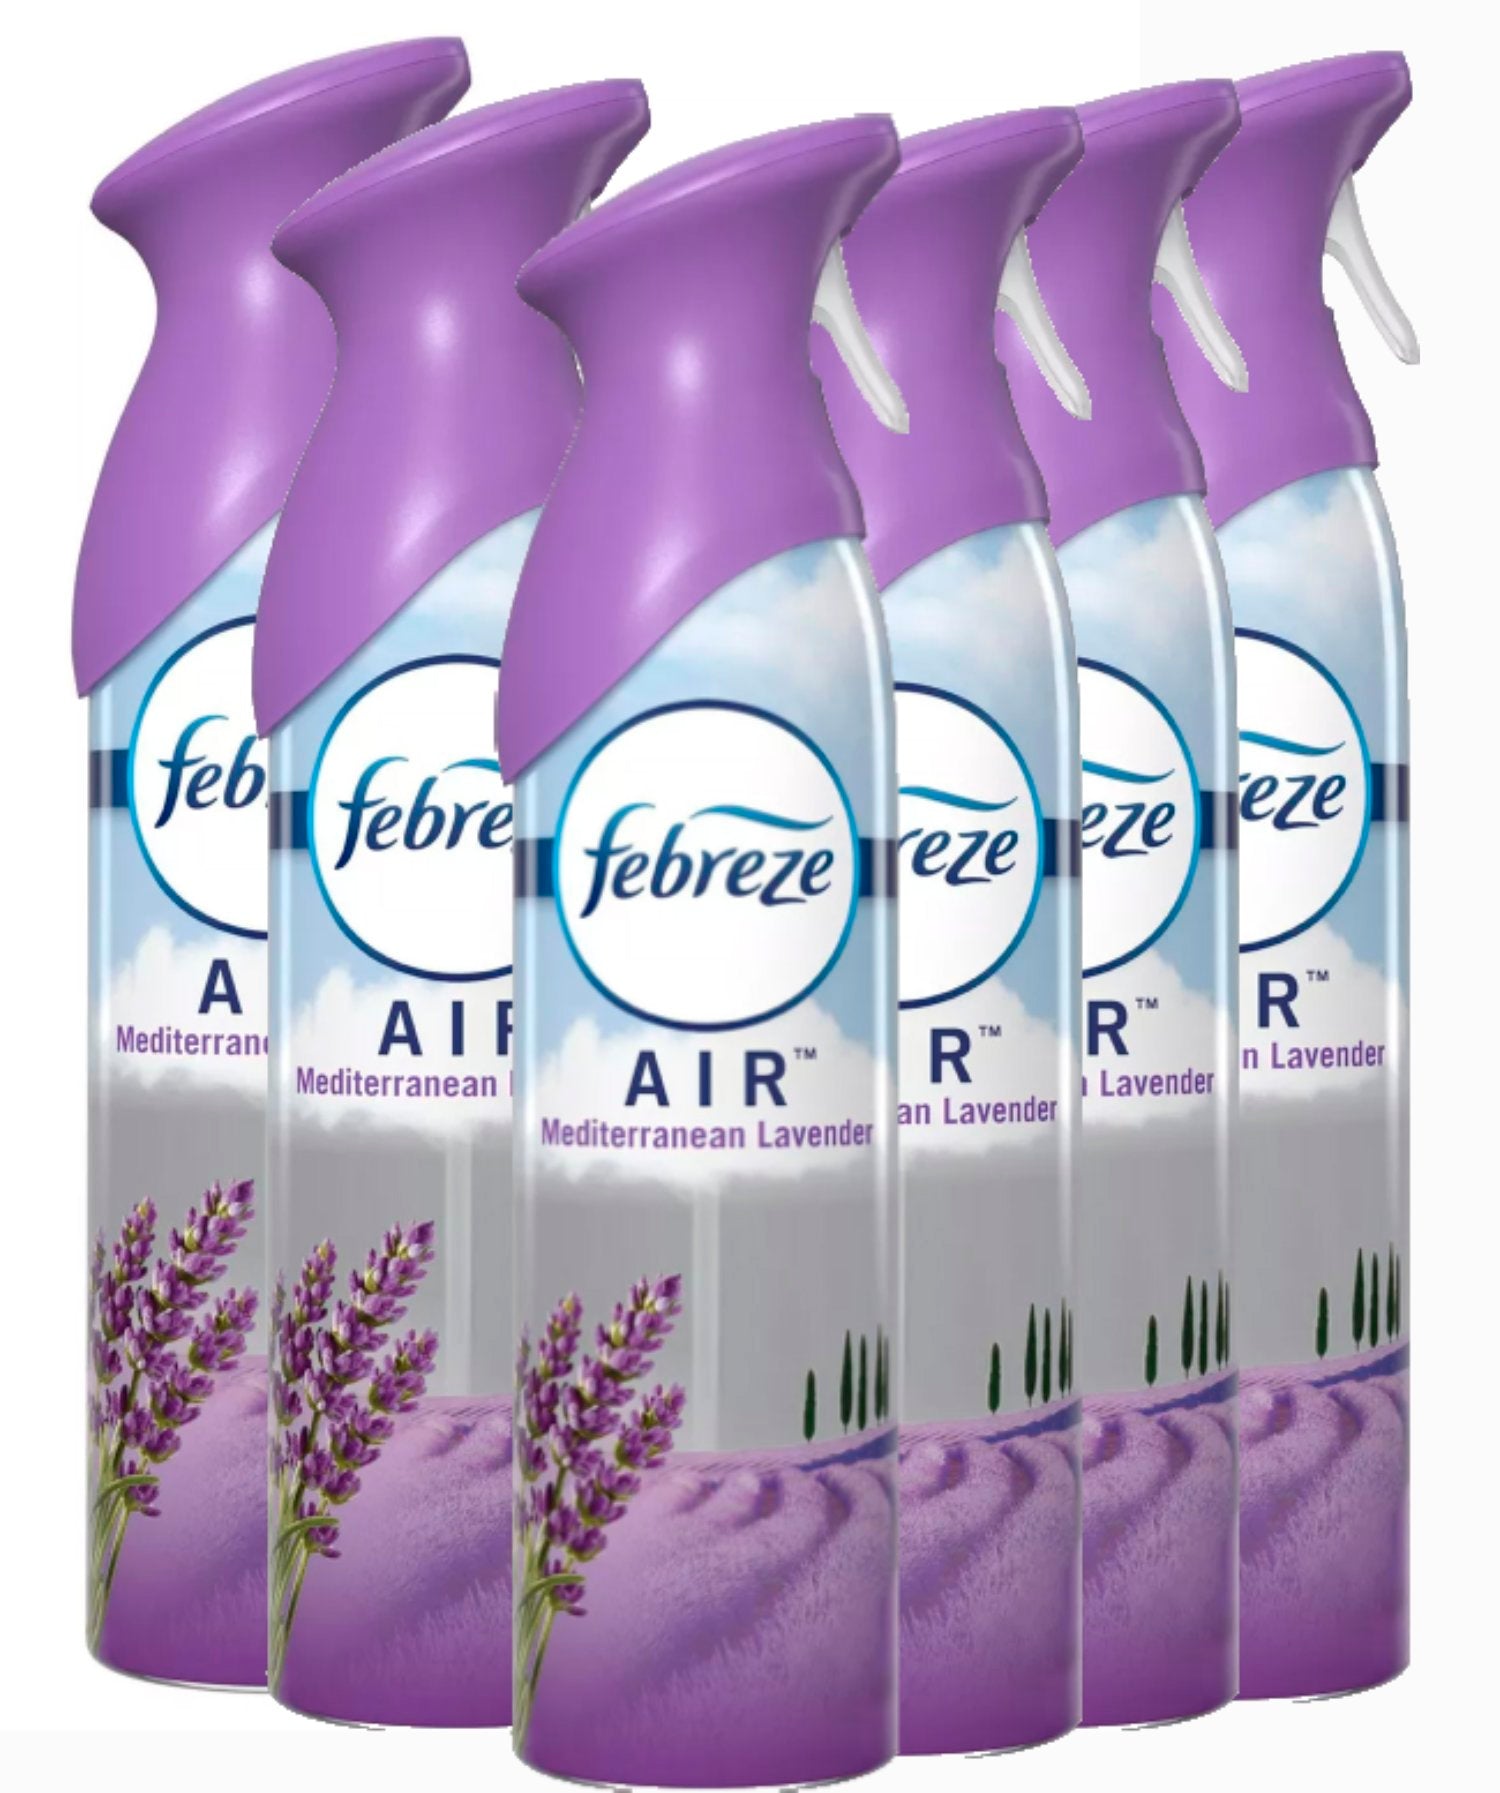 Febreze Air Mist Freshener Spray, Mediterranean Lavender - 300 ml